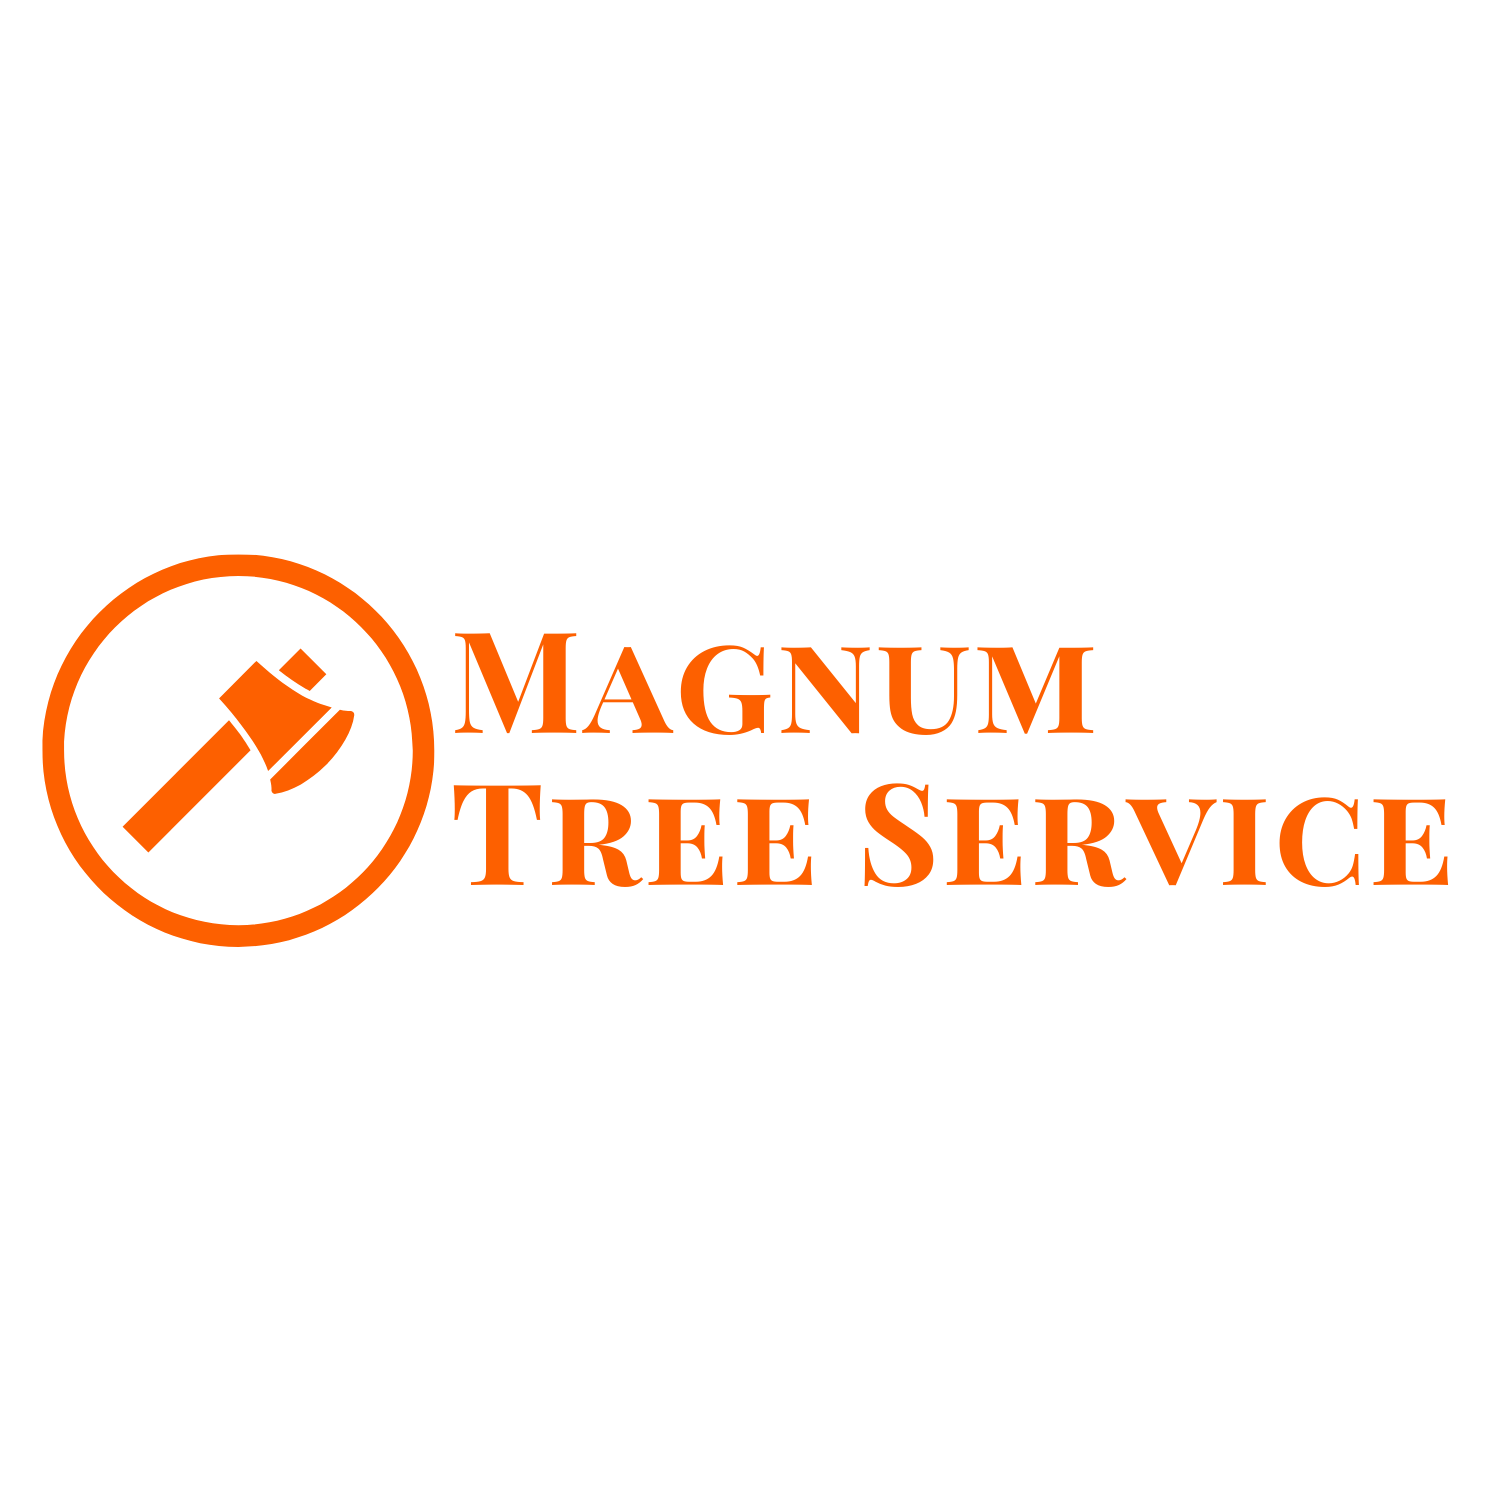 Magnum Tree Service